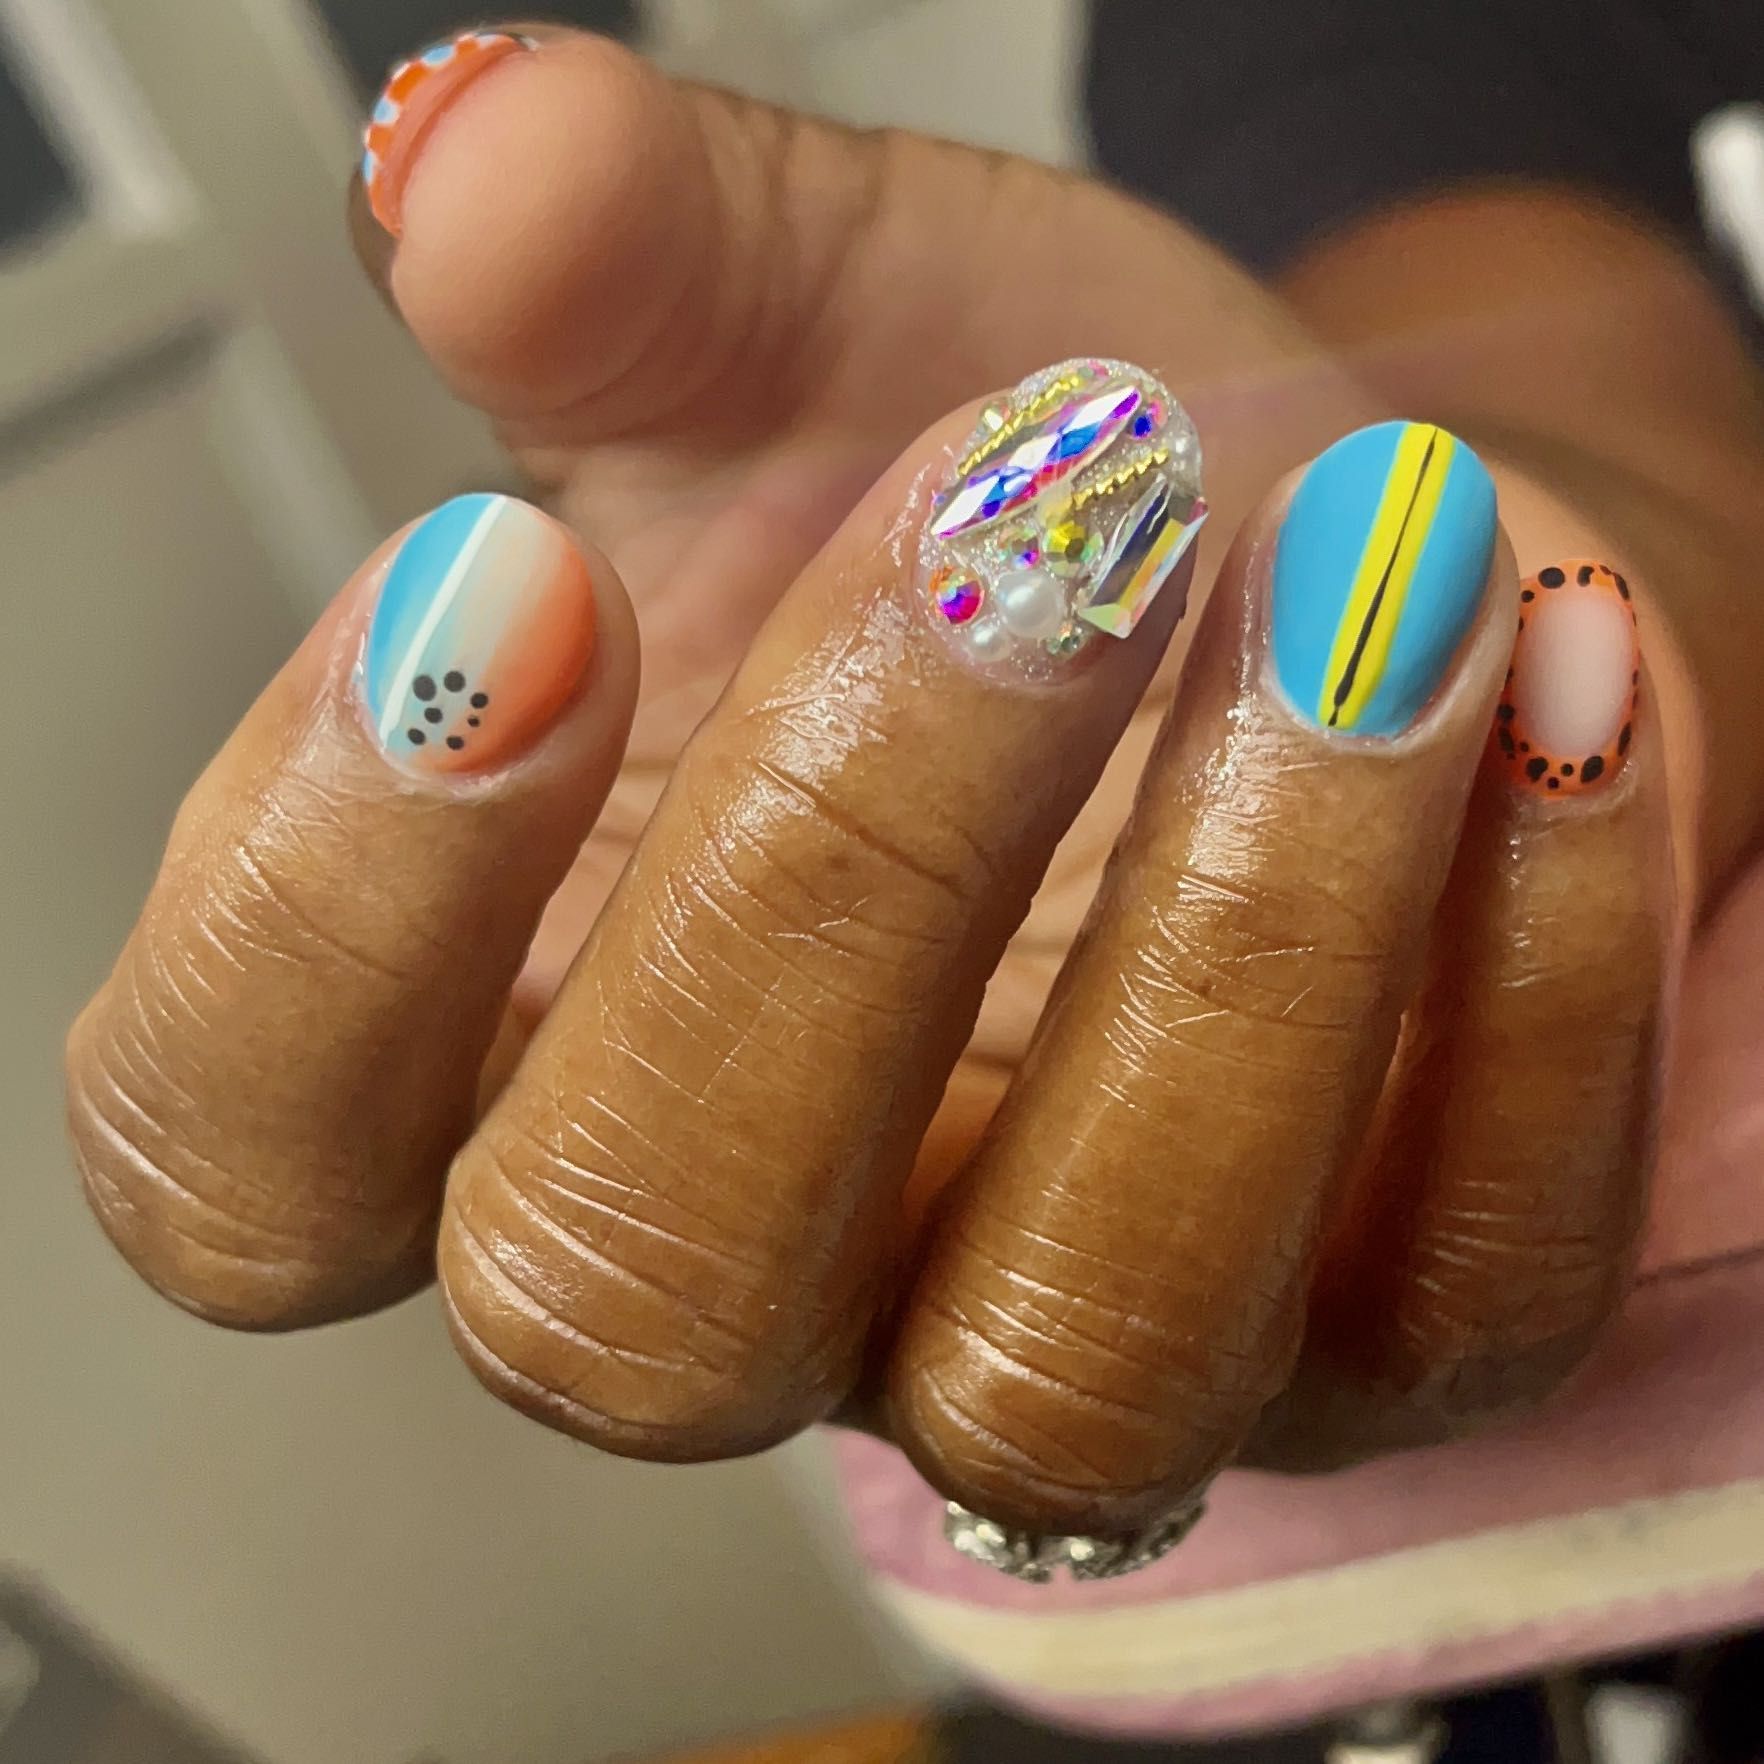 Full bling Nail 💎 (1 finger on each hand) portfolio